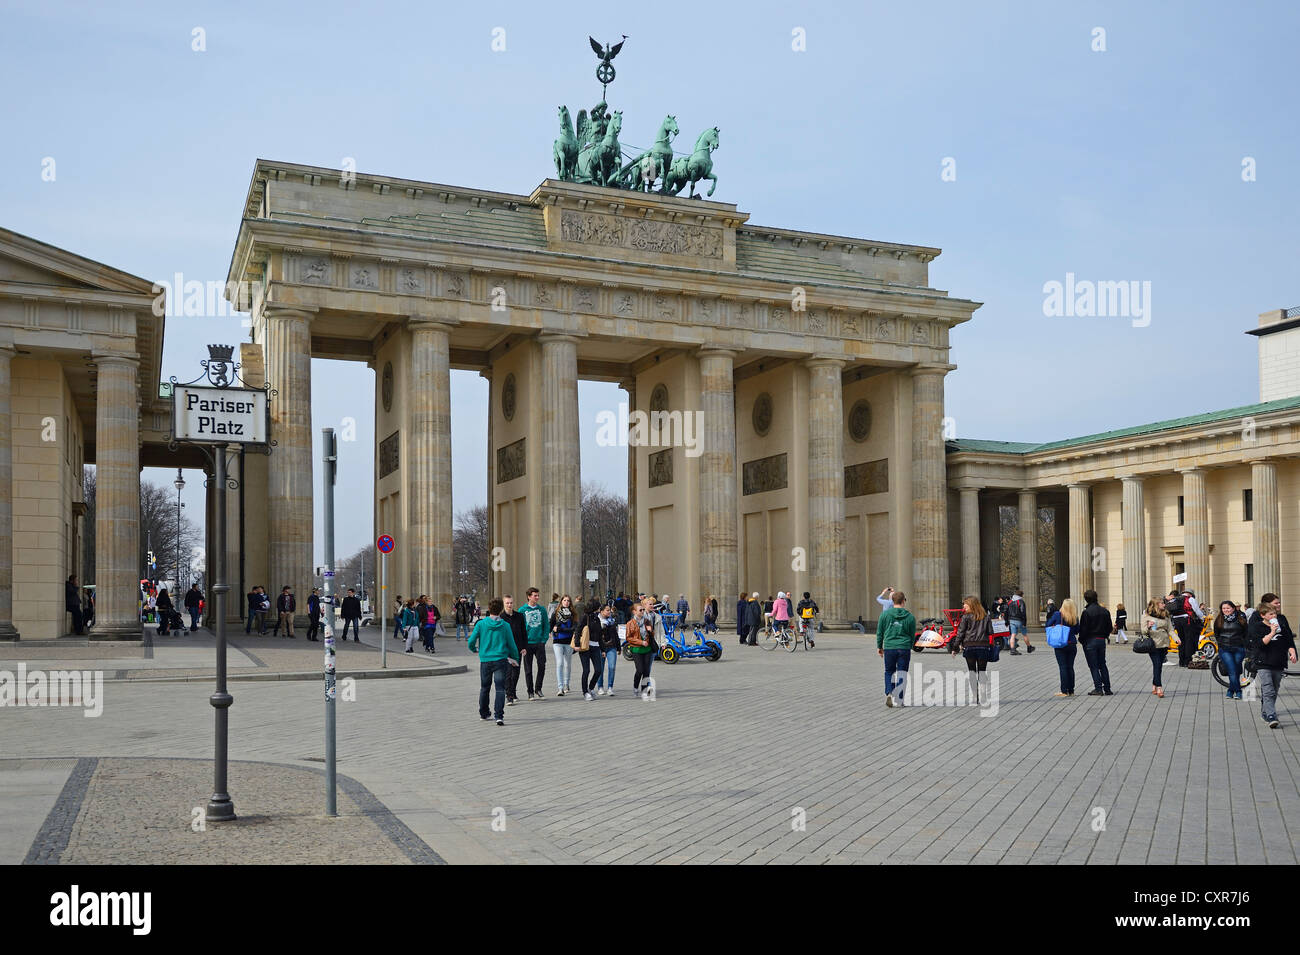 Les touristes et les artistes de rue sur la Pariser Platz, Porte de Brandebourg, Berlin, Germany, Europe Banque D'Images